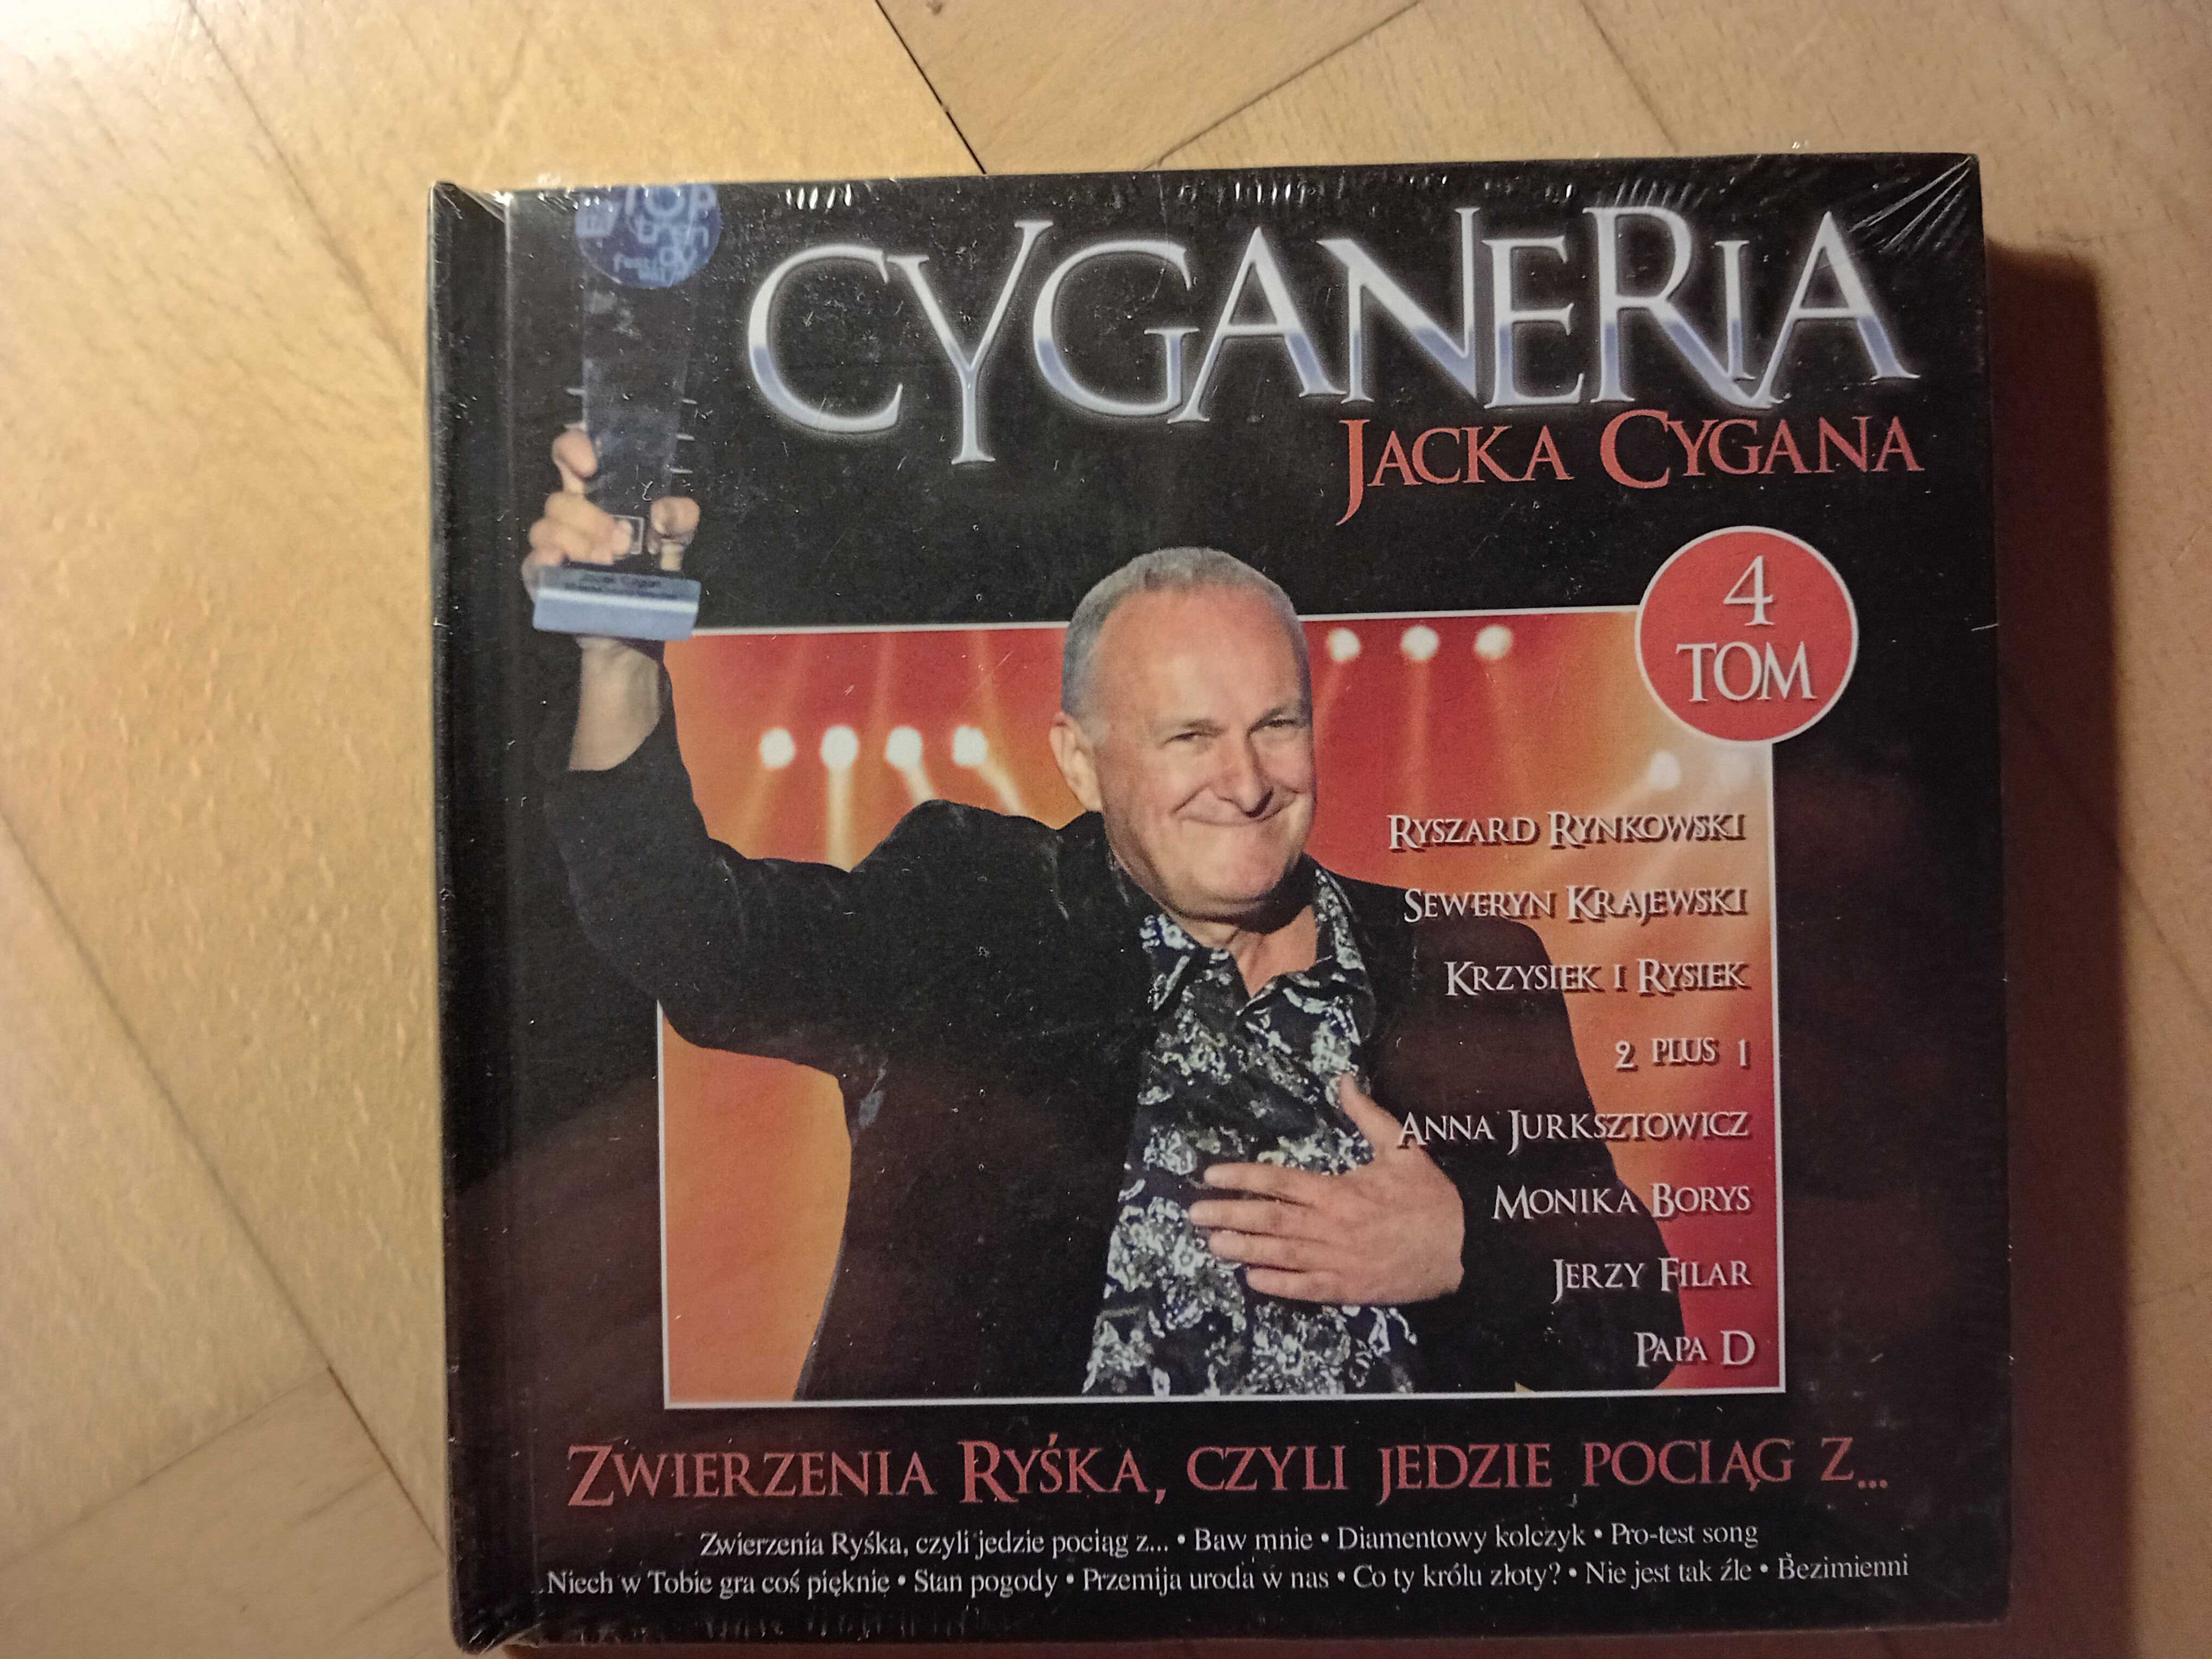 Płyty cd Cyganeria Jacka Cygana komplet 5 płyt